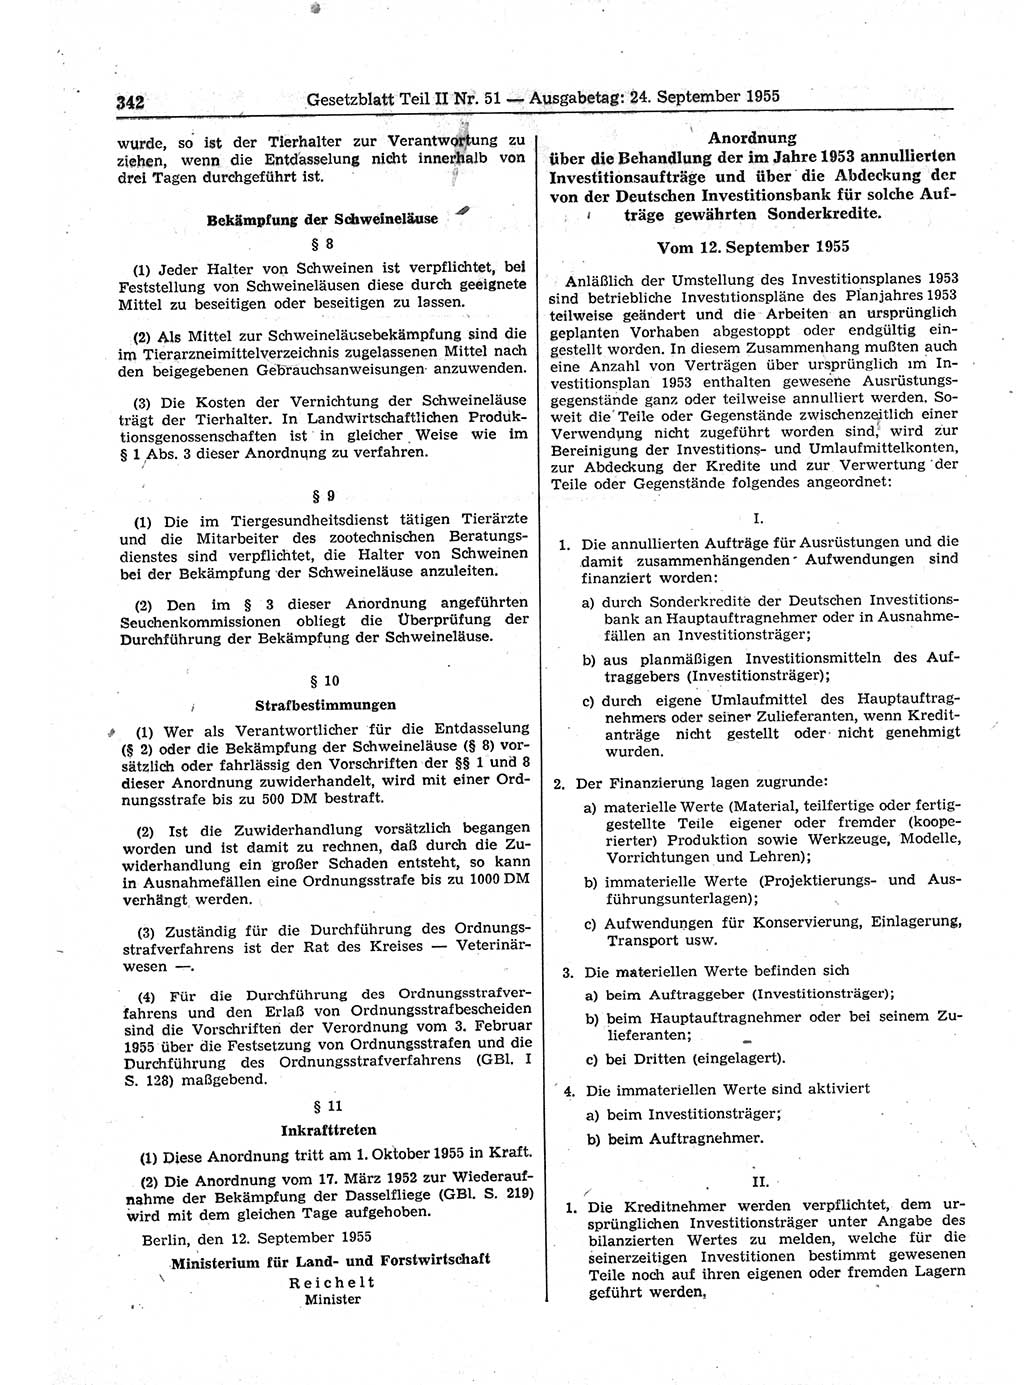 Gesetzblatt (GBl.) der Deutschen Demokratischen Republik (DDR) Teil ⅠⅠ 1955, Seite 342 (GBl. DDR ⅠⅠ 1955, S. 342)